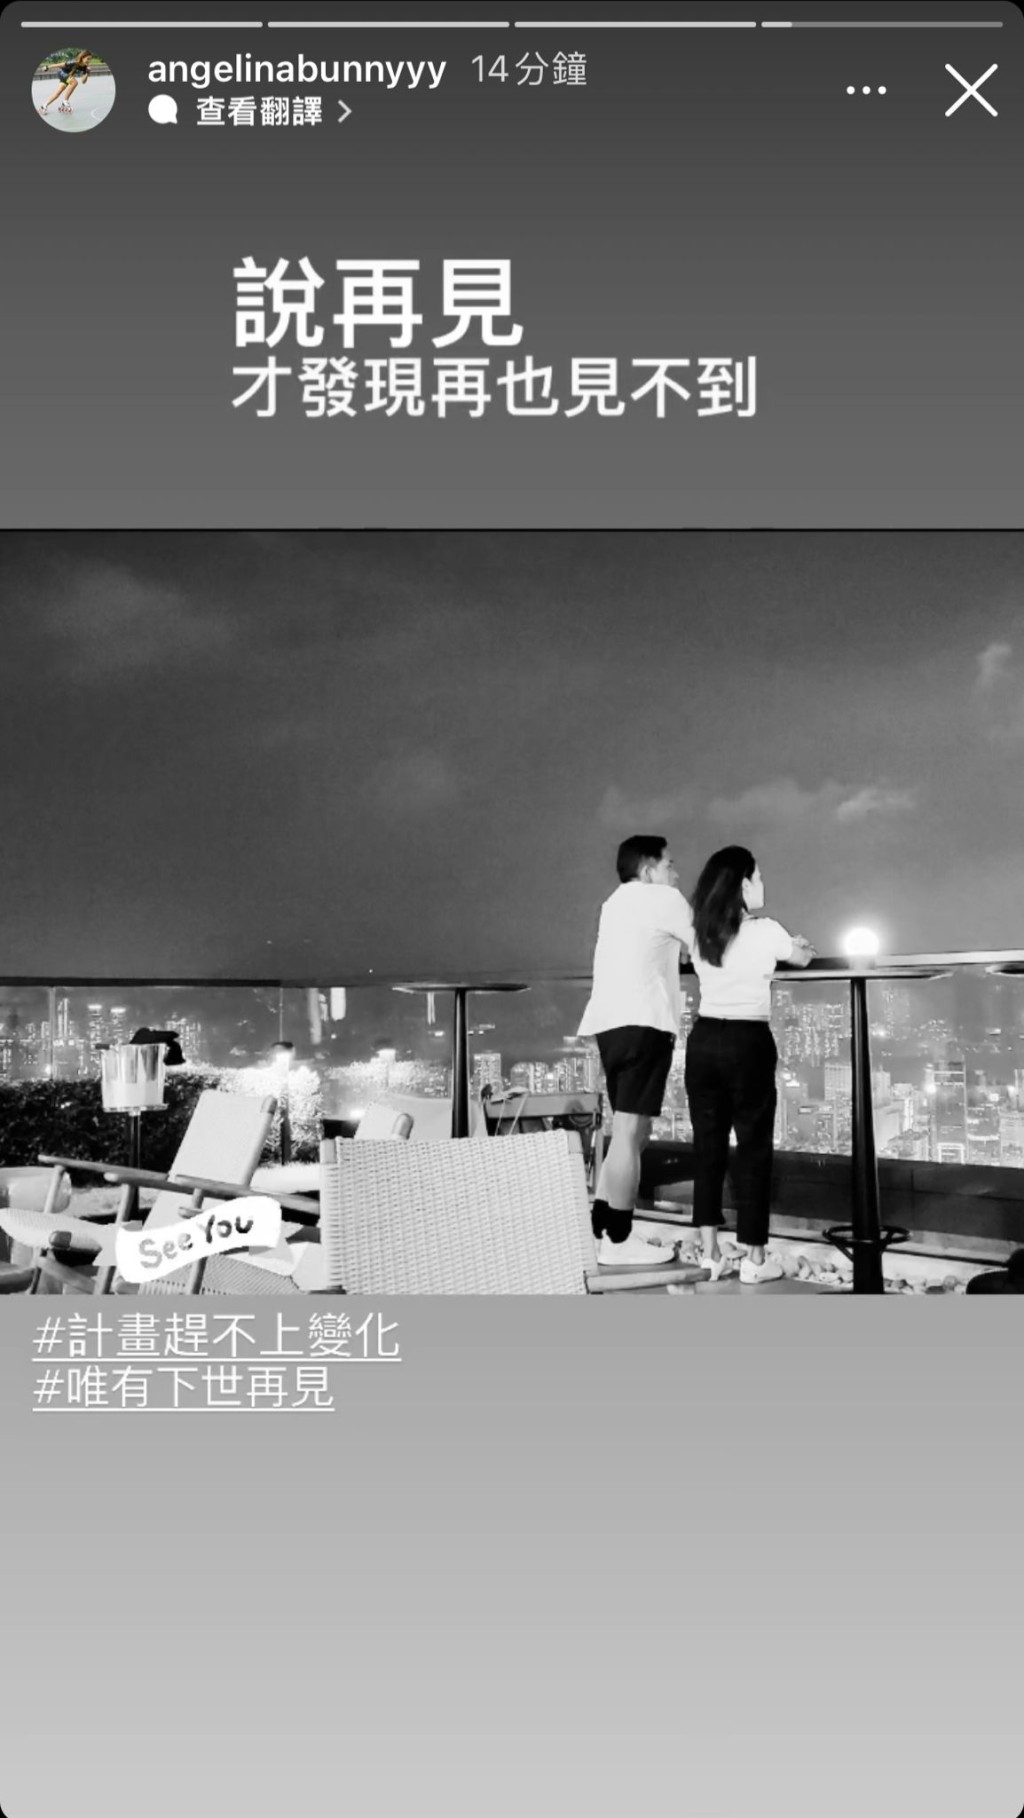 隨後，王雁芝再分享一張二人的黑白背影照，她慨嘆：「說再見才發現再也見不到 #計劃趕不上變化 #惟有下世再見」